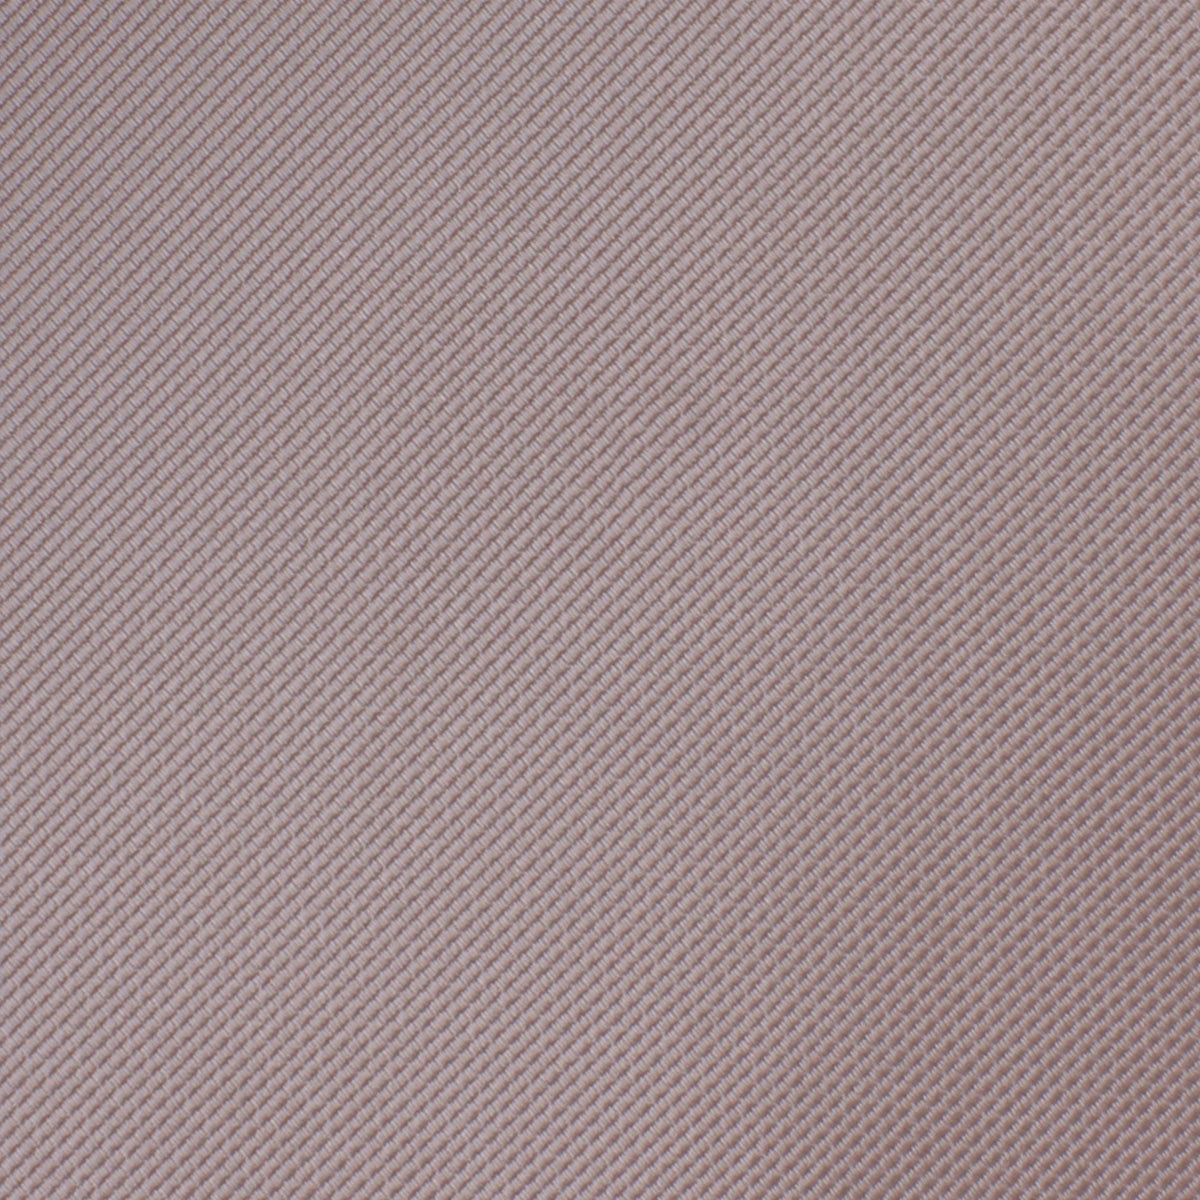 Biscotti Grey Weave Necktie Fabric